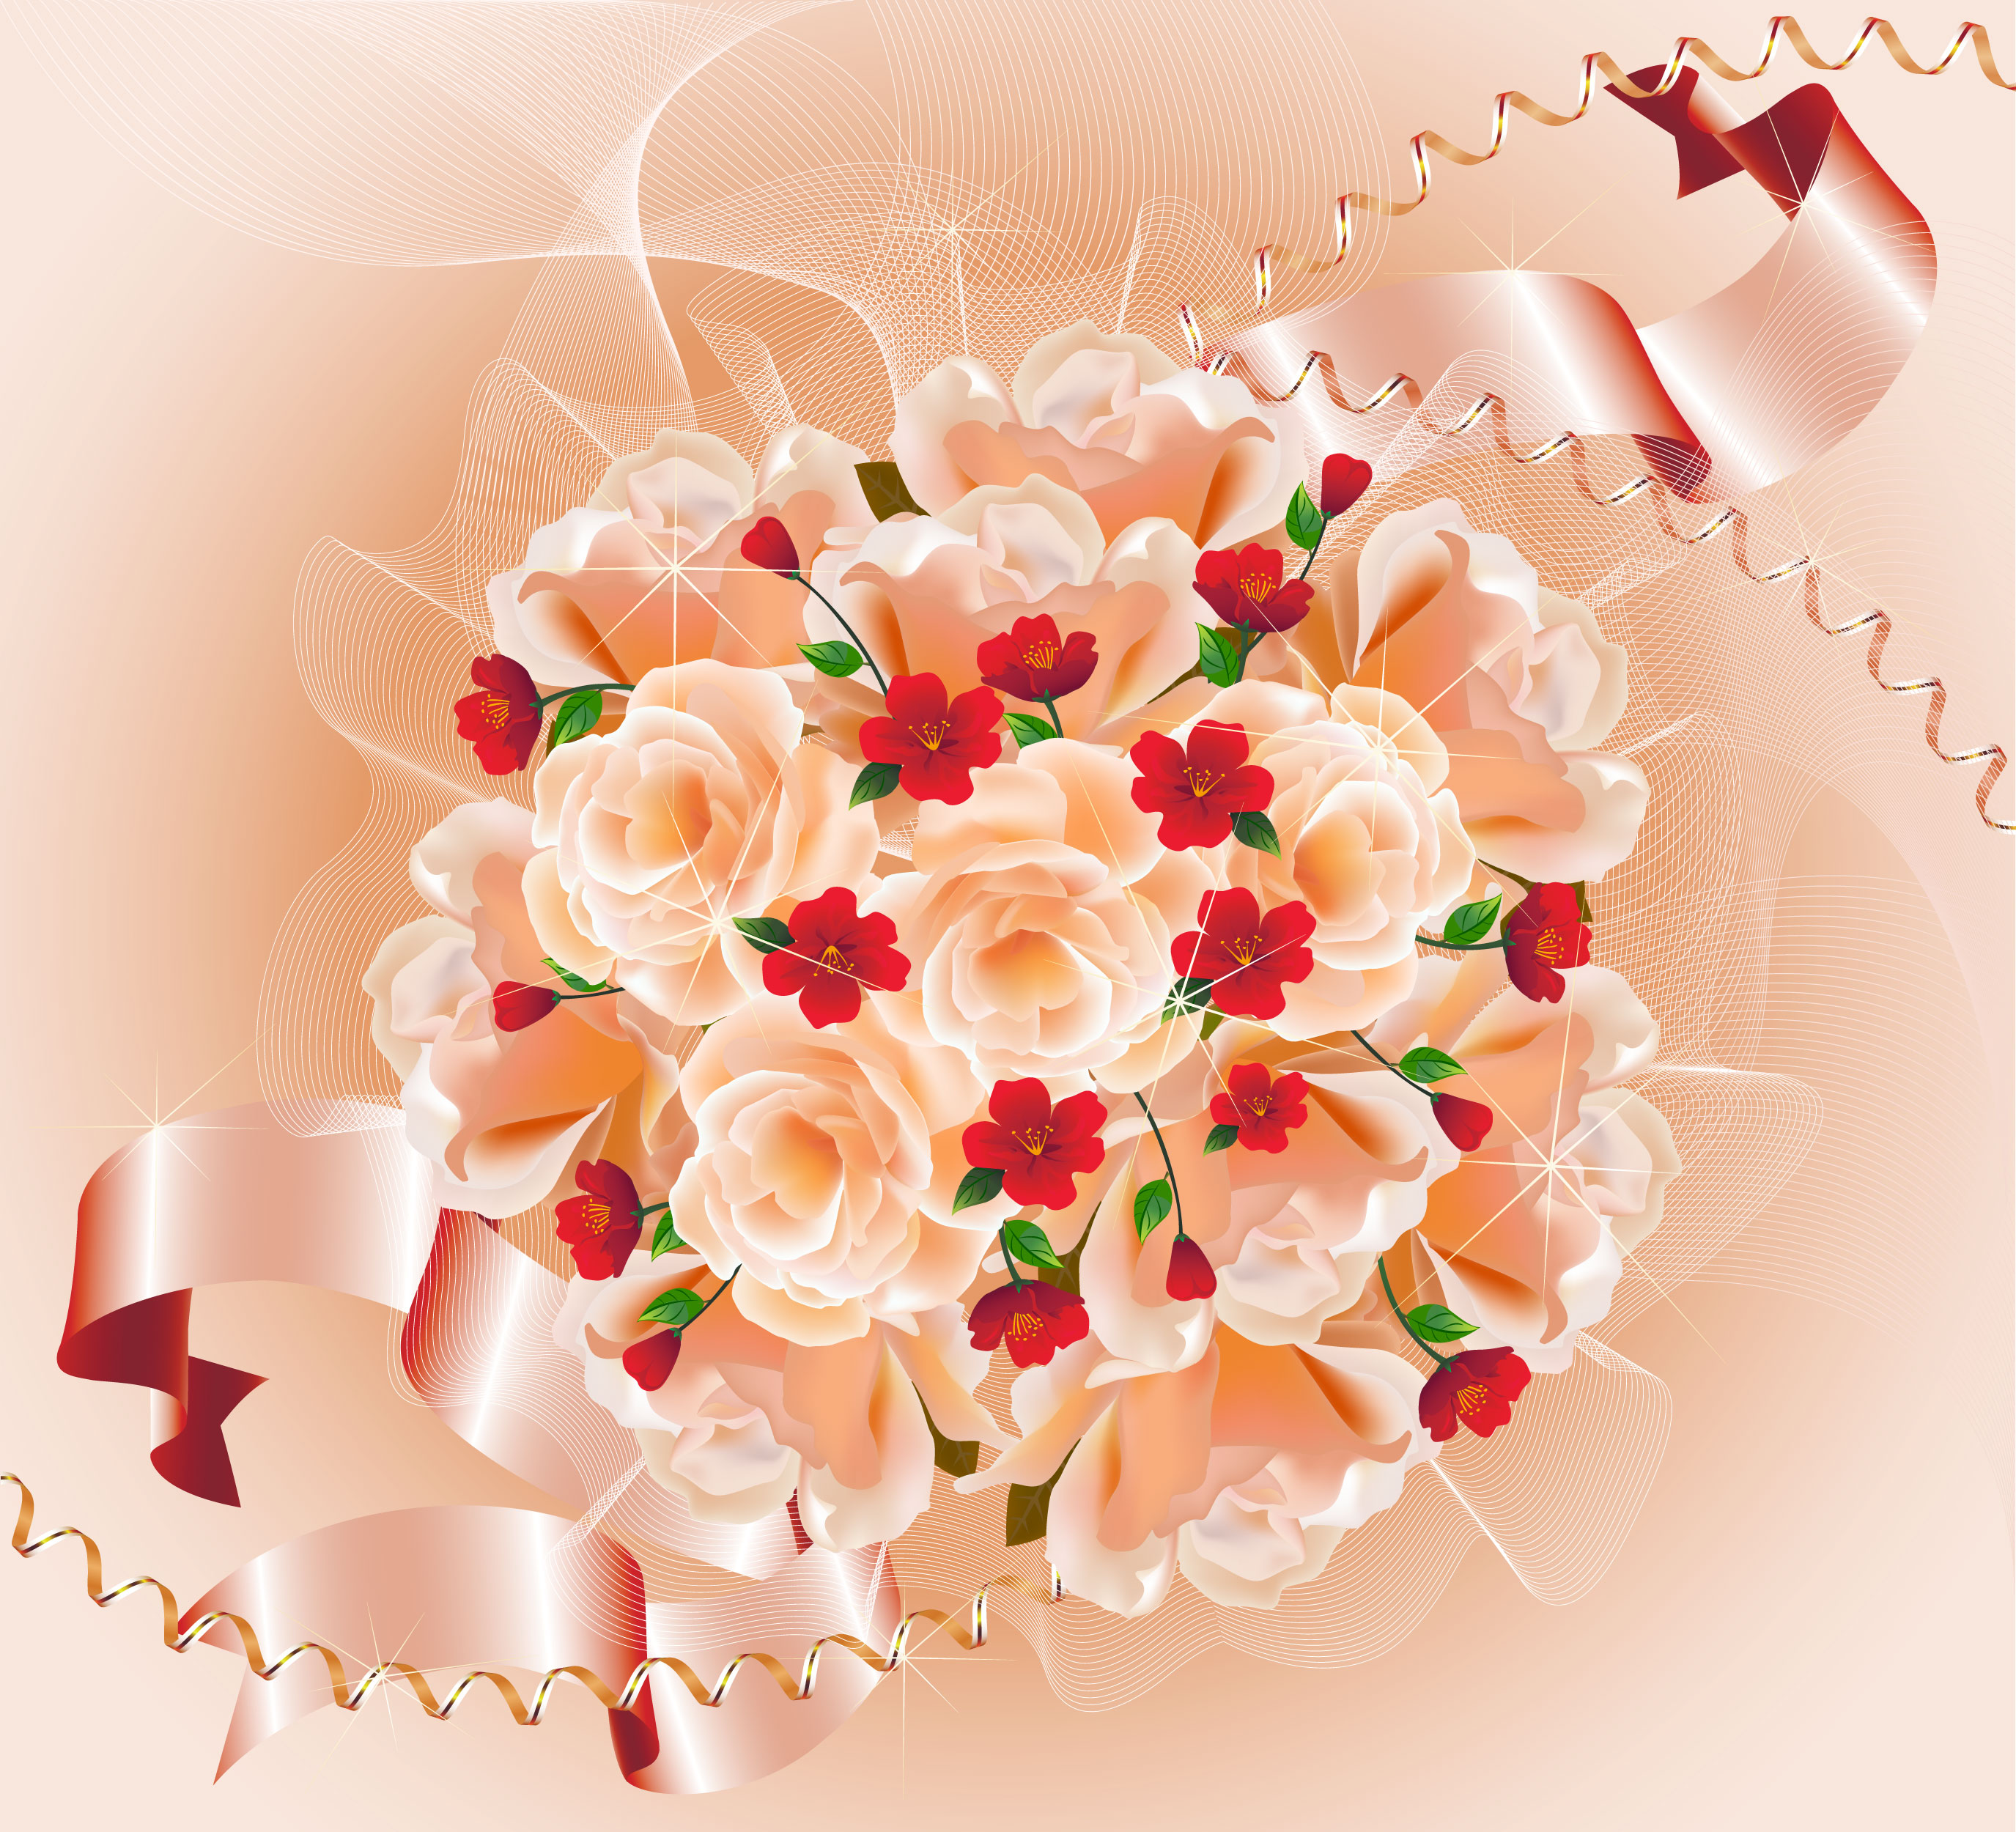 花のイラスト フリー素材 壁紙 背景no 6 バラの束 ピンクリボン